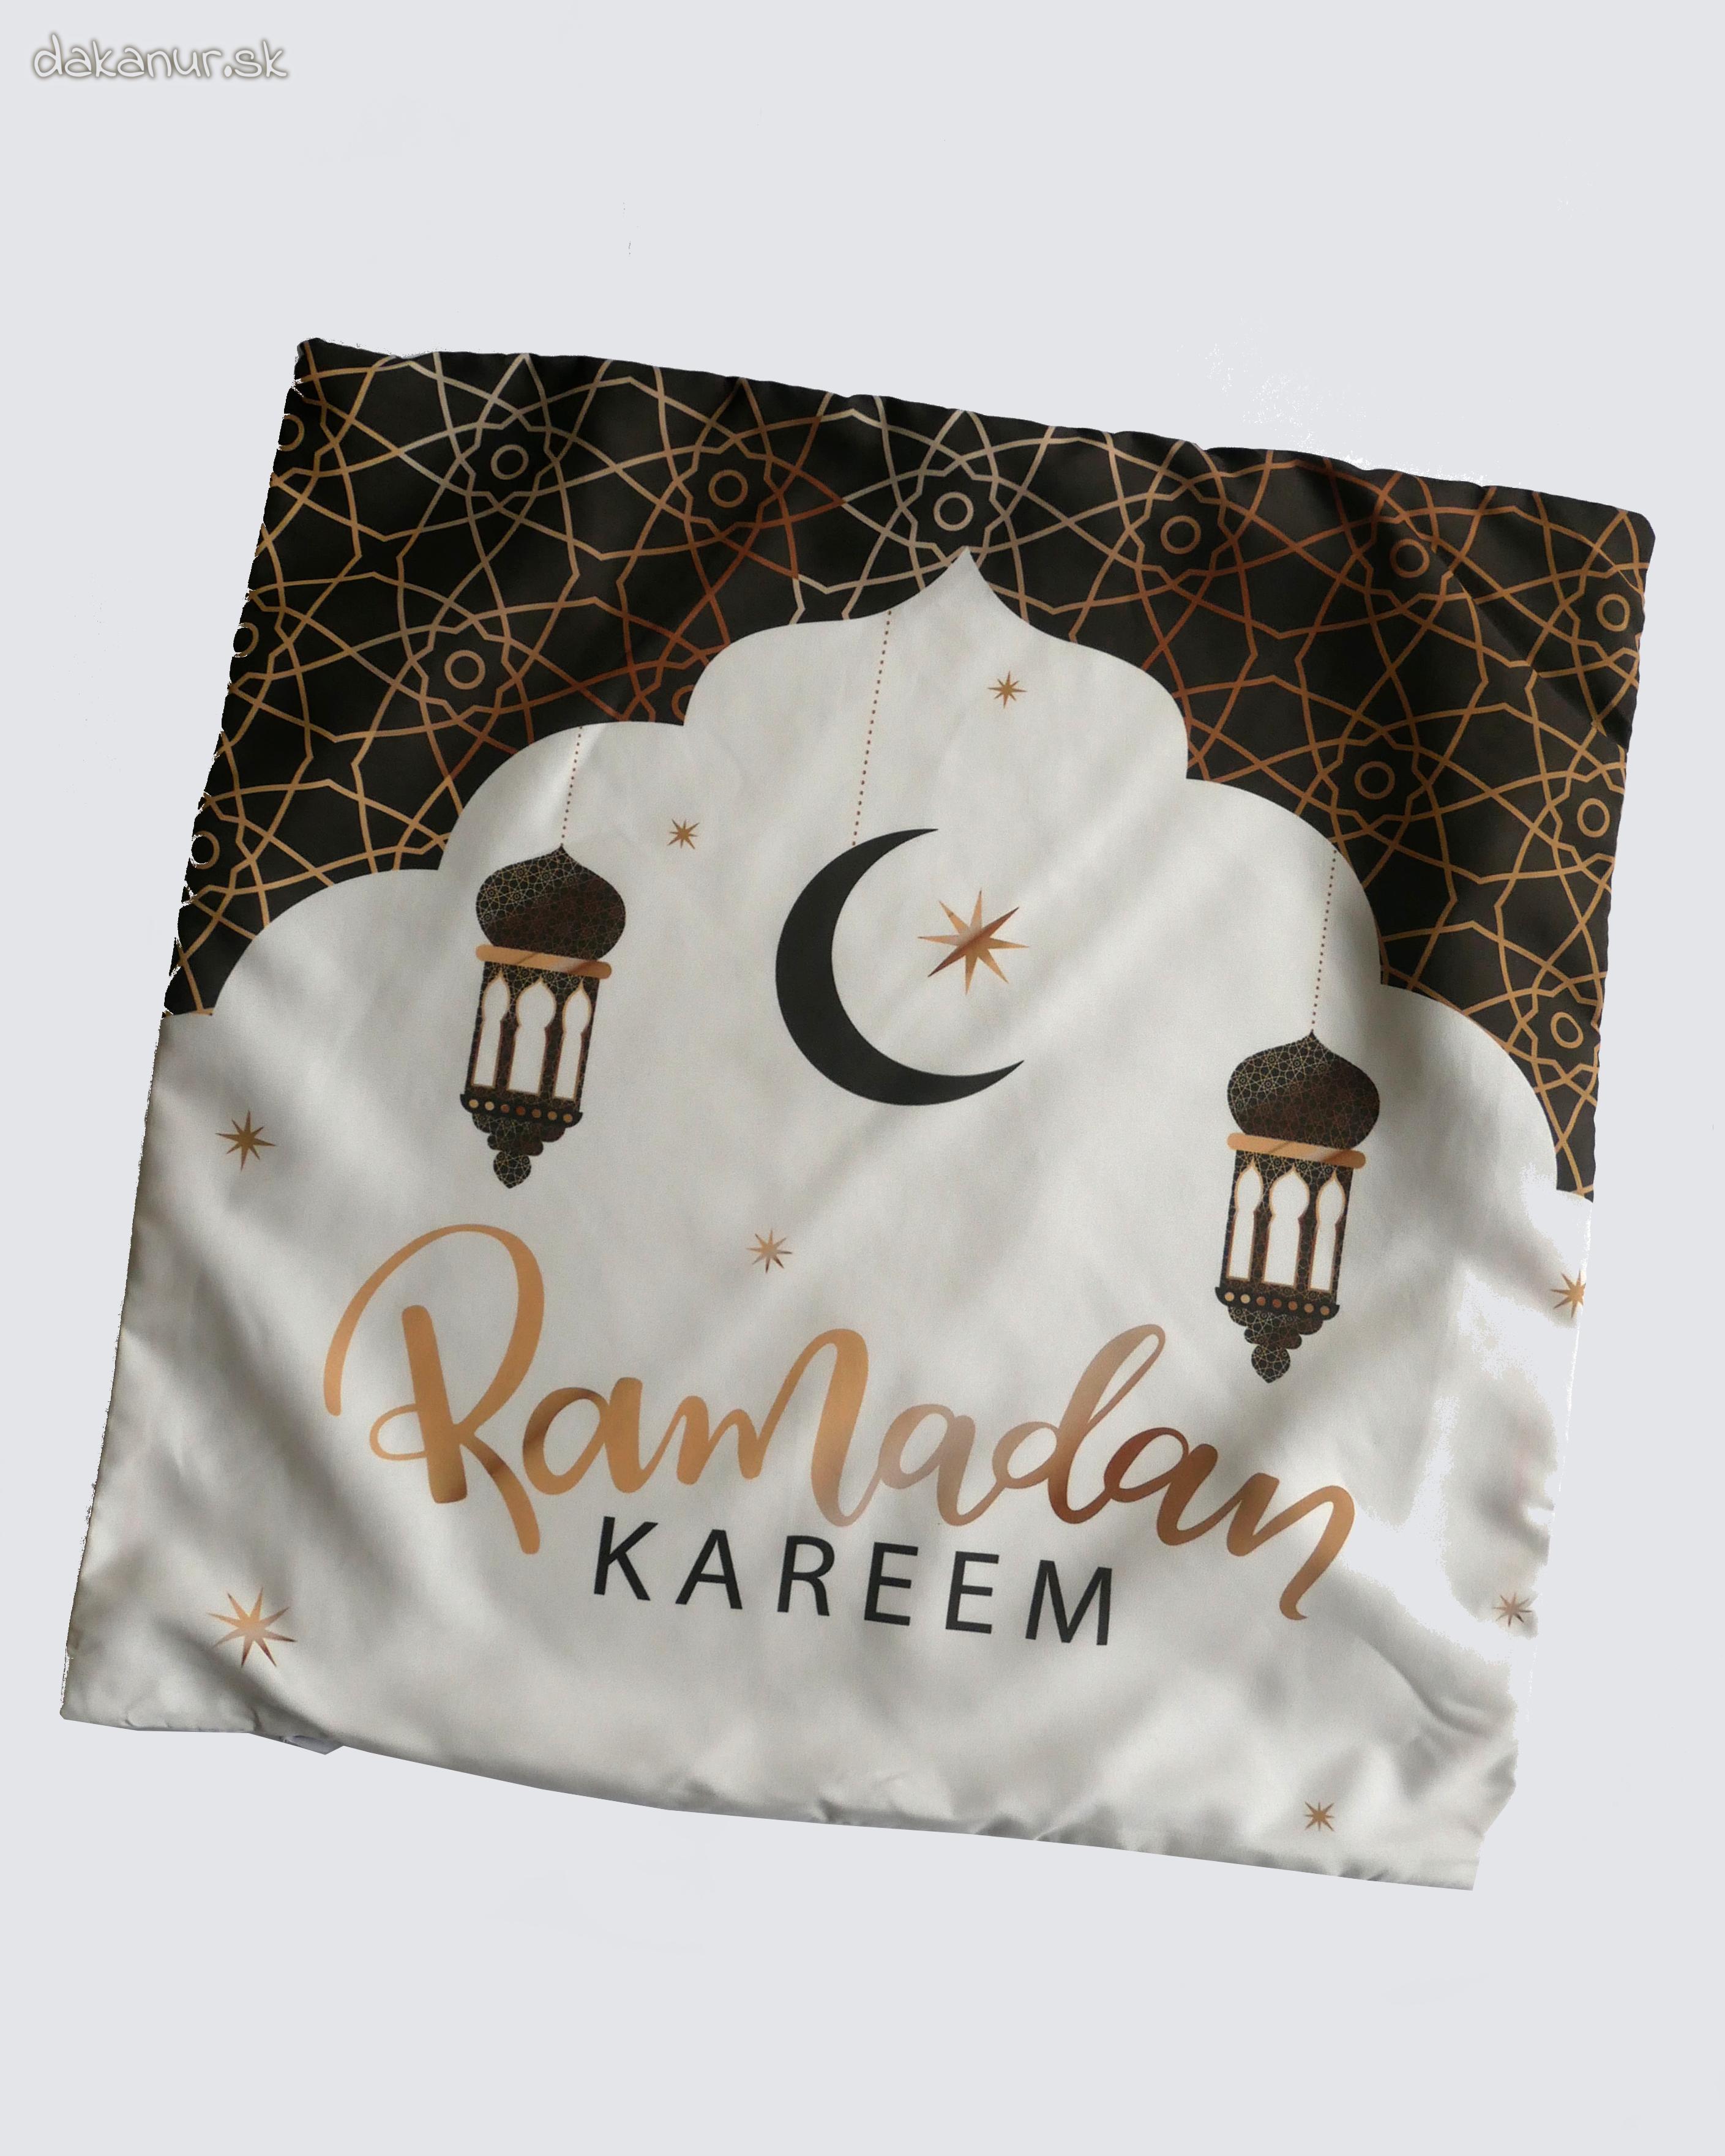 Obliečka béžovo čierna ramadán